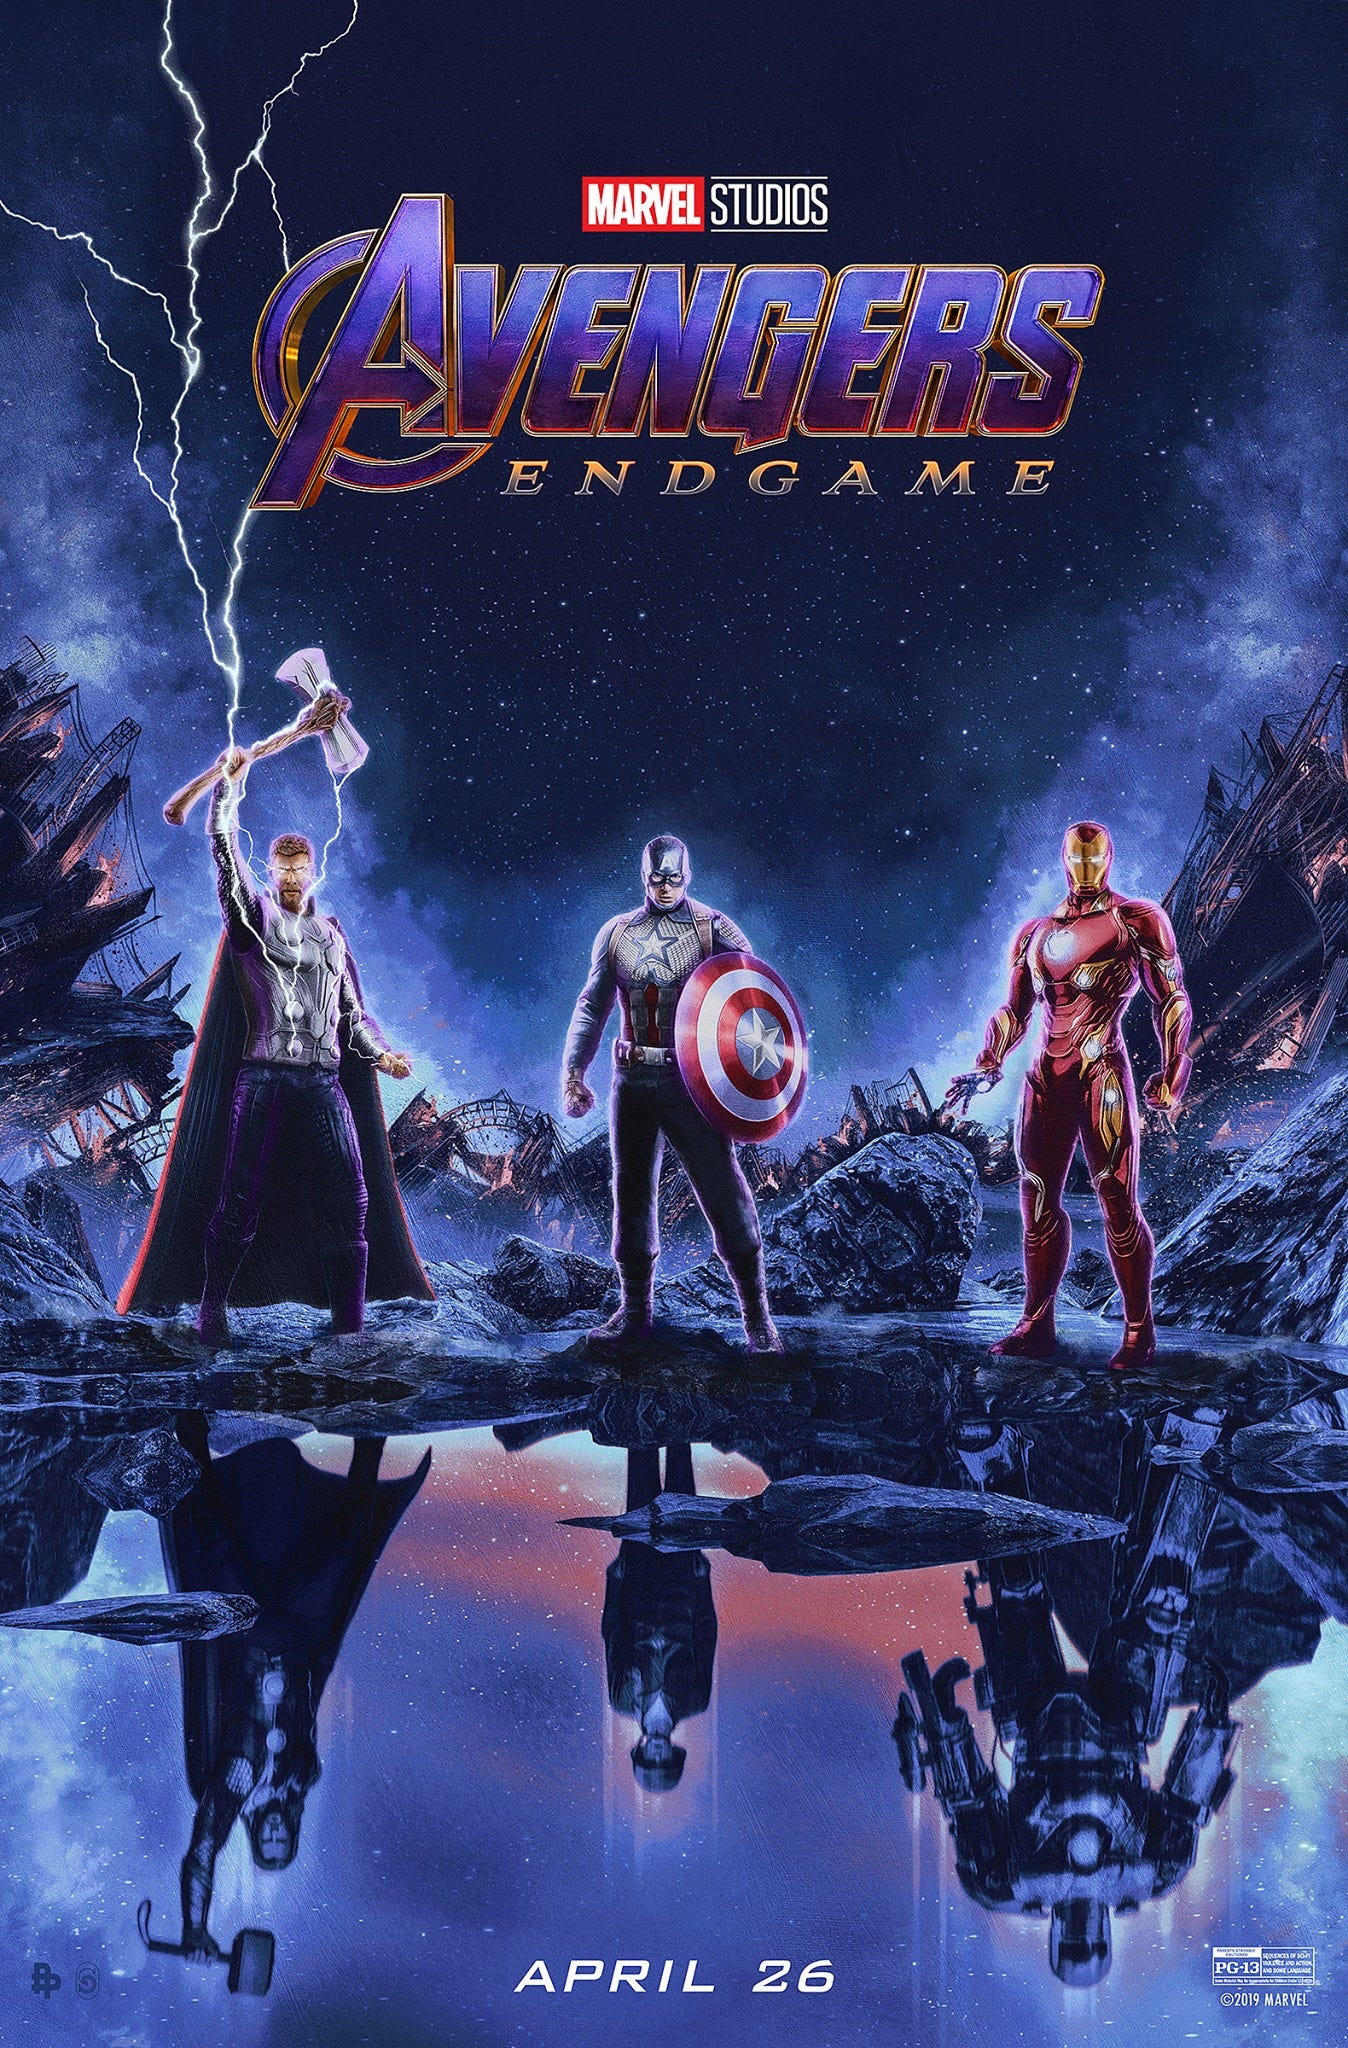 Avengers: Endgame — Don't Be a Villain, by Jeffrey Bricker